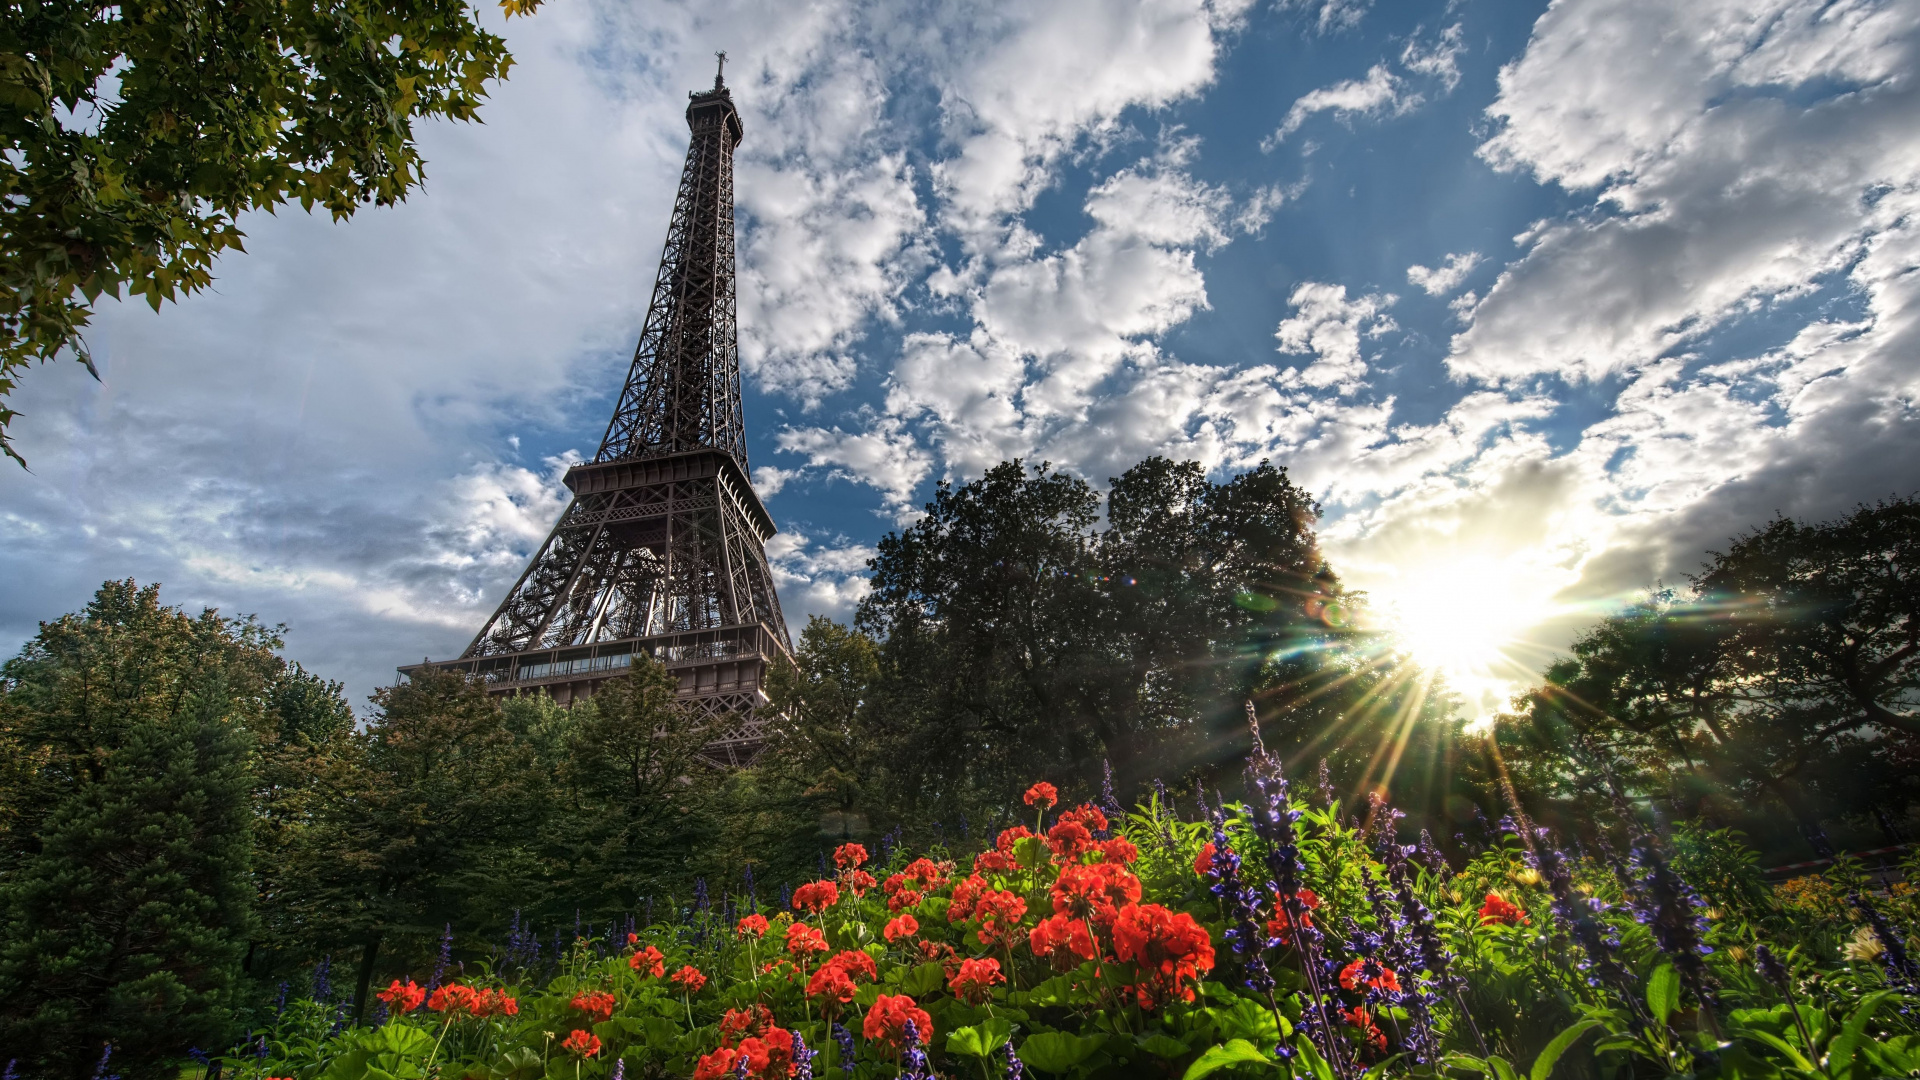 艾菲尔铁塔, 性质, 里程碑, 巴黎的埃菲尔铁塔, 天空 壁纸 1920x1080 允许